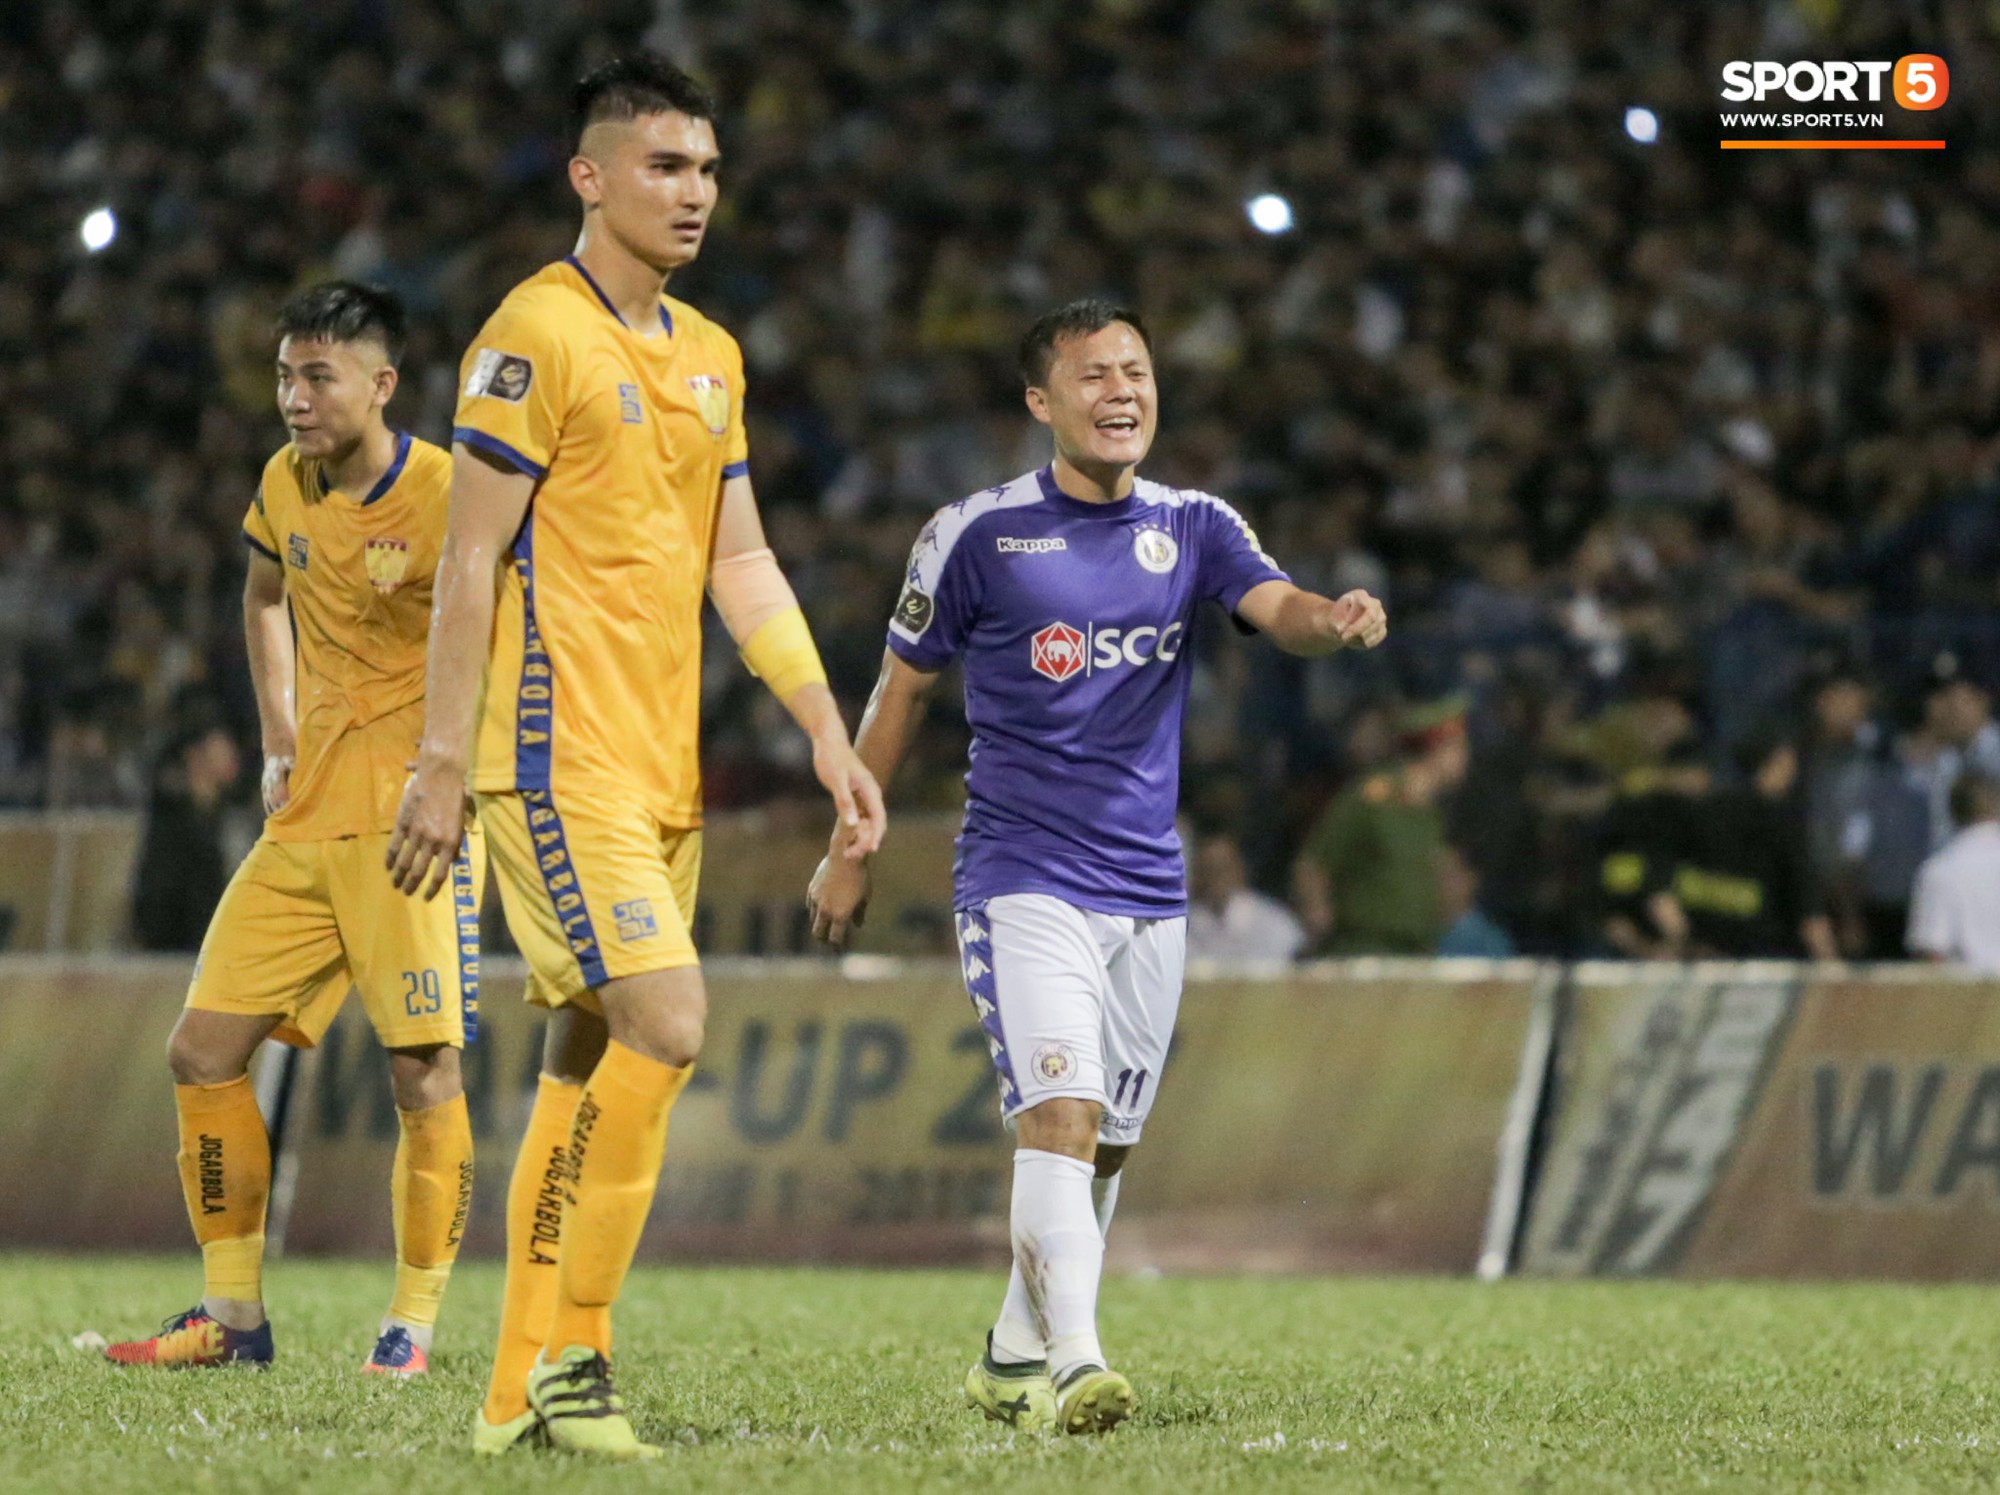 Quang Hải nổi cáu vì cậu bé nhặt bóng câu giờ trong ngày Hà Nội FC thất bại trước Thanh Hóa - Ảnh 9.